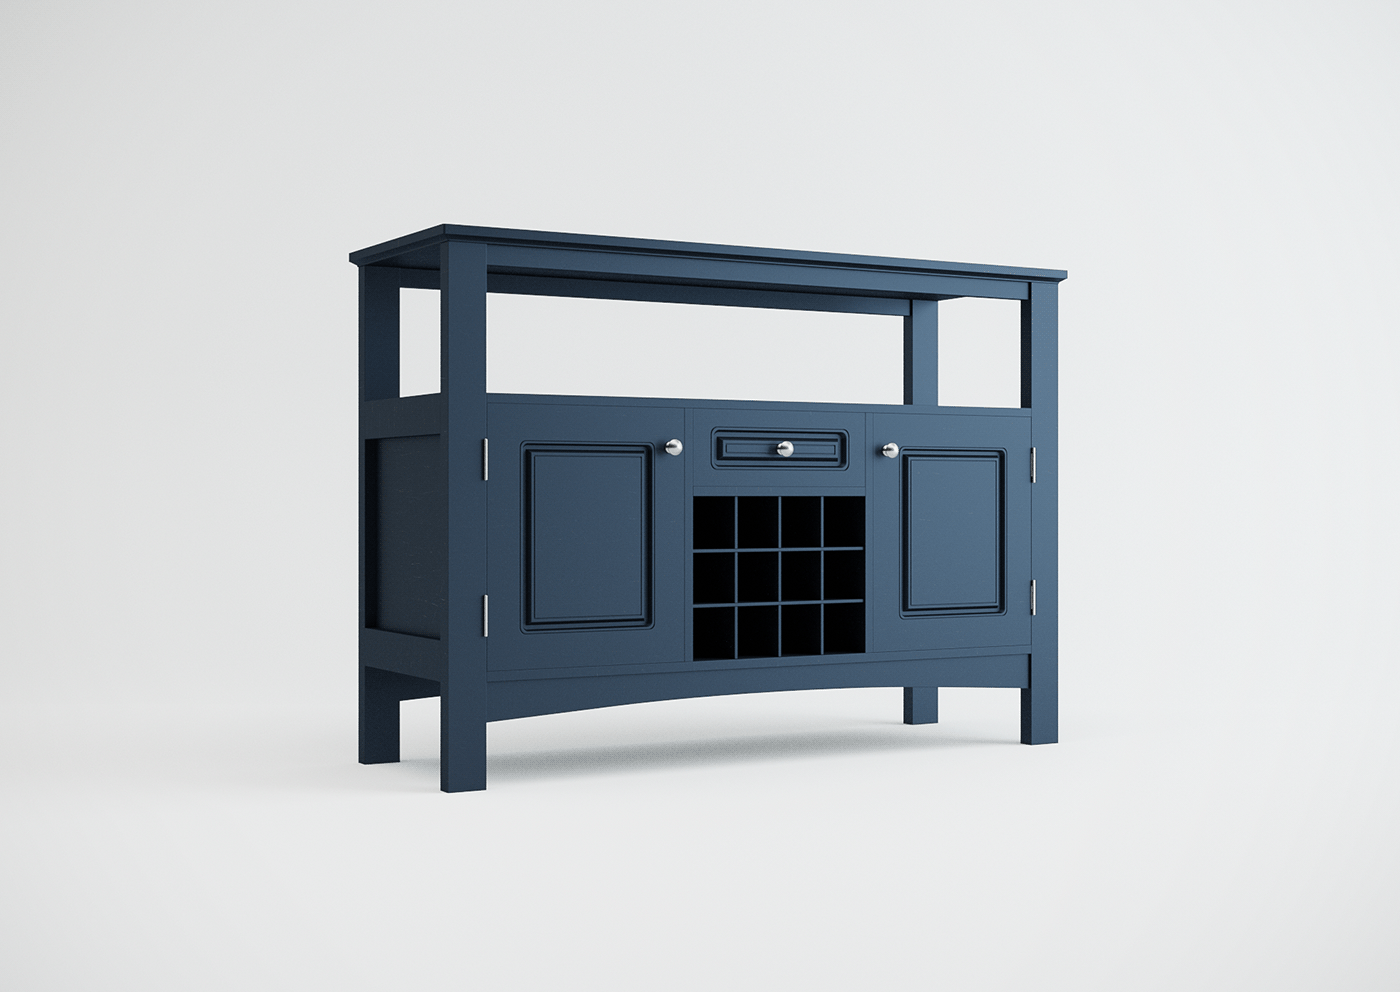 furnituredesign design 3D 3dmodel productdesign móveis blender3d furniture product CGI